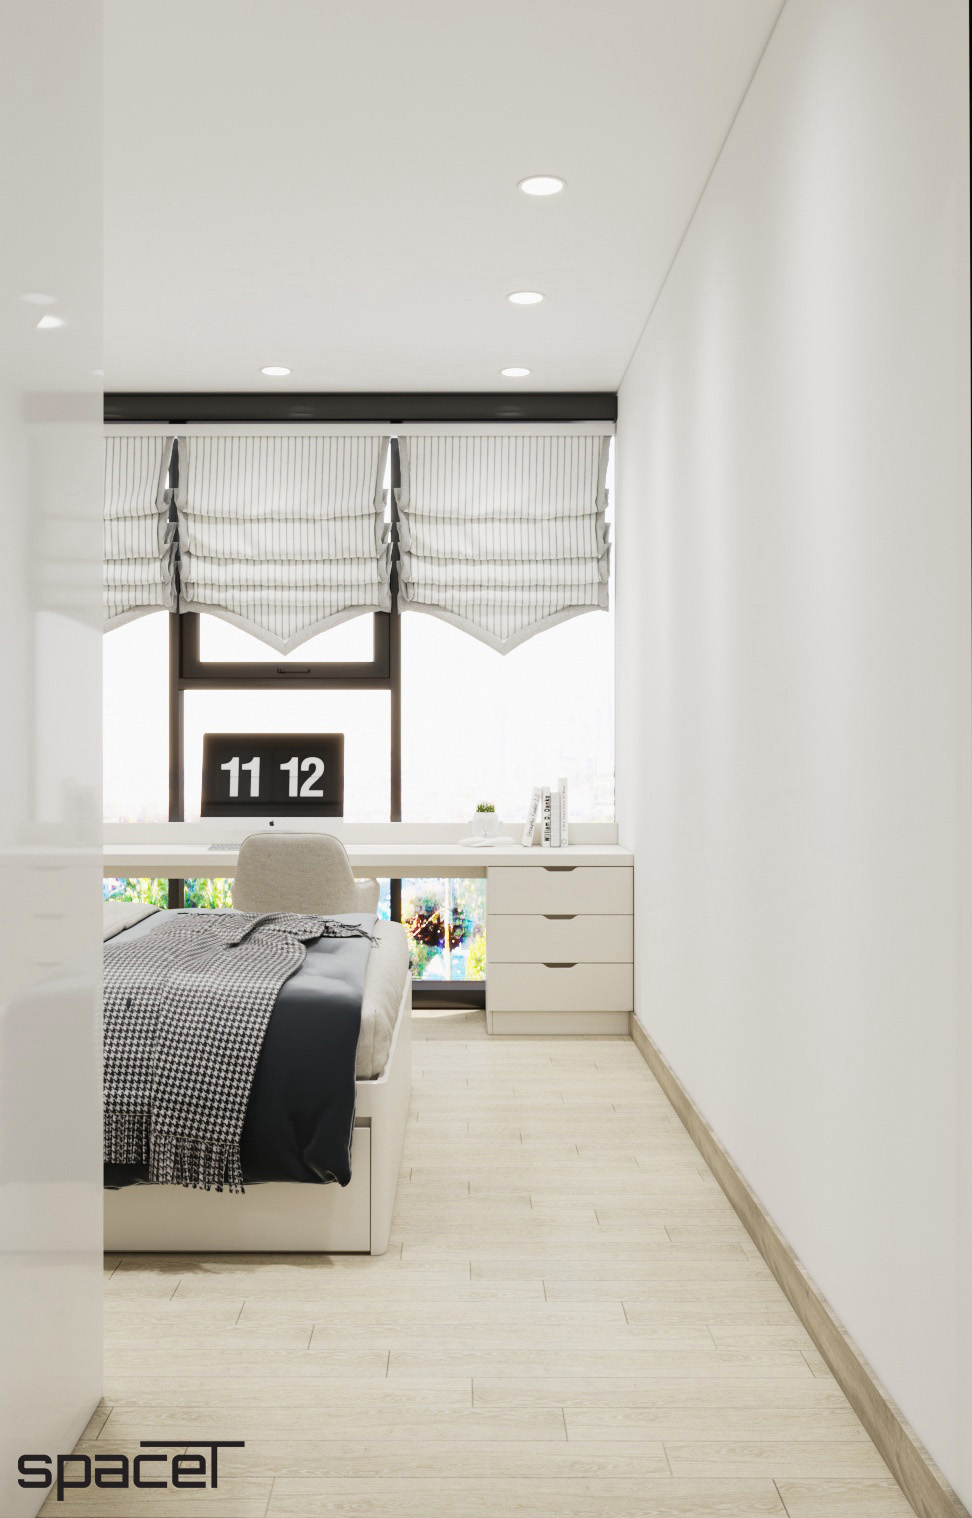 Phòng ngủ, phong cách Hiện đại Modern, thiết kế concept nội thất, căn hộ Sunwah Pearl